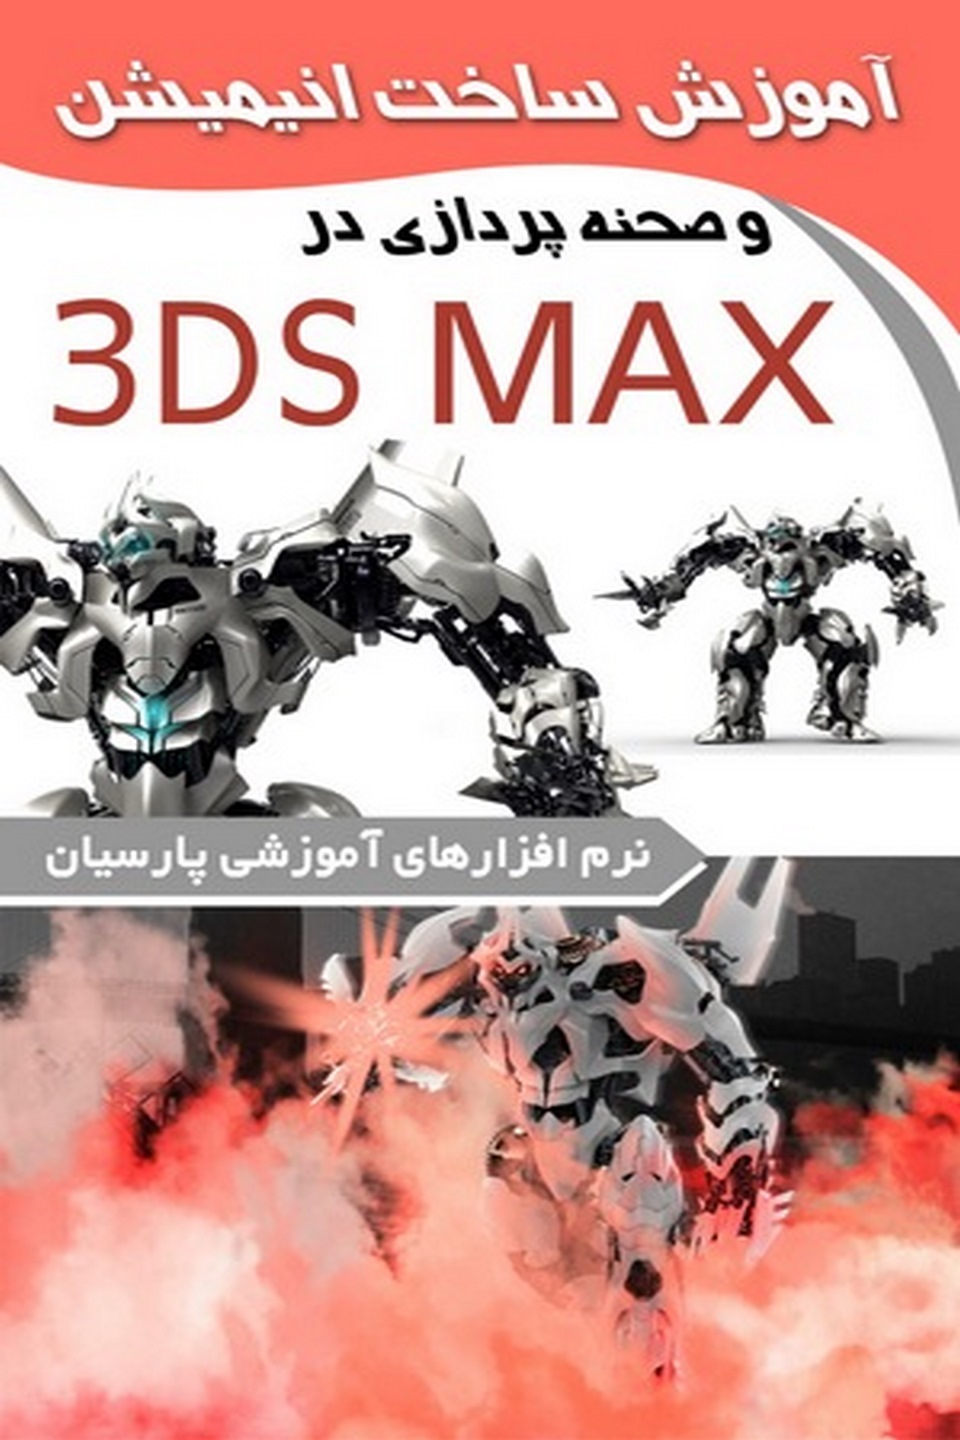 ساخت انیمیشن وصحنه پردازی در ۳DS MAX